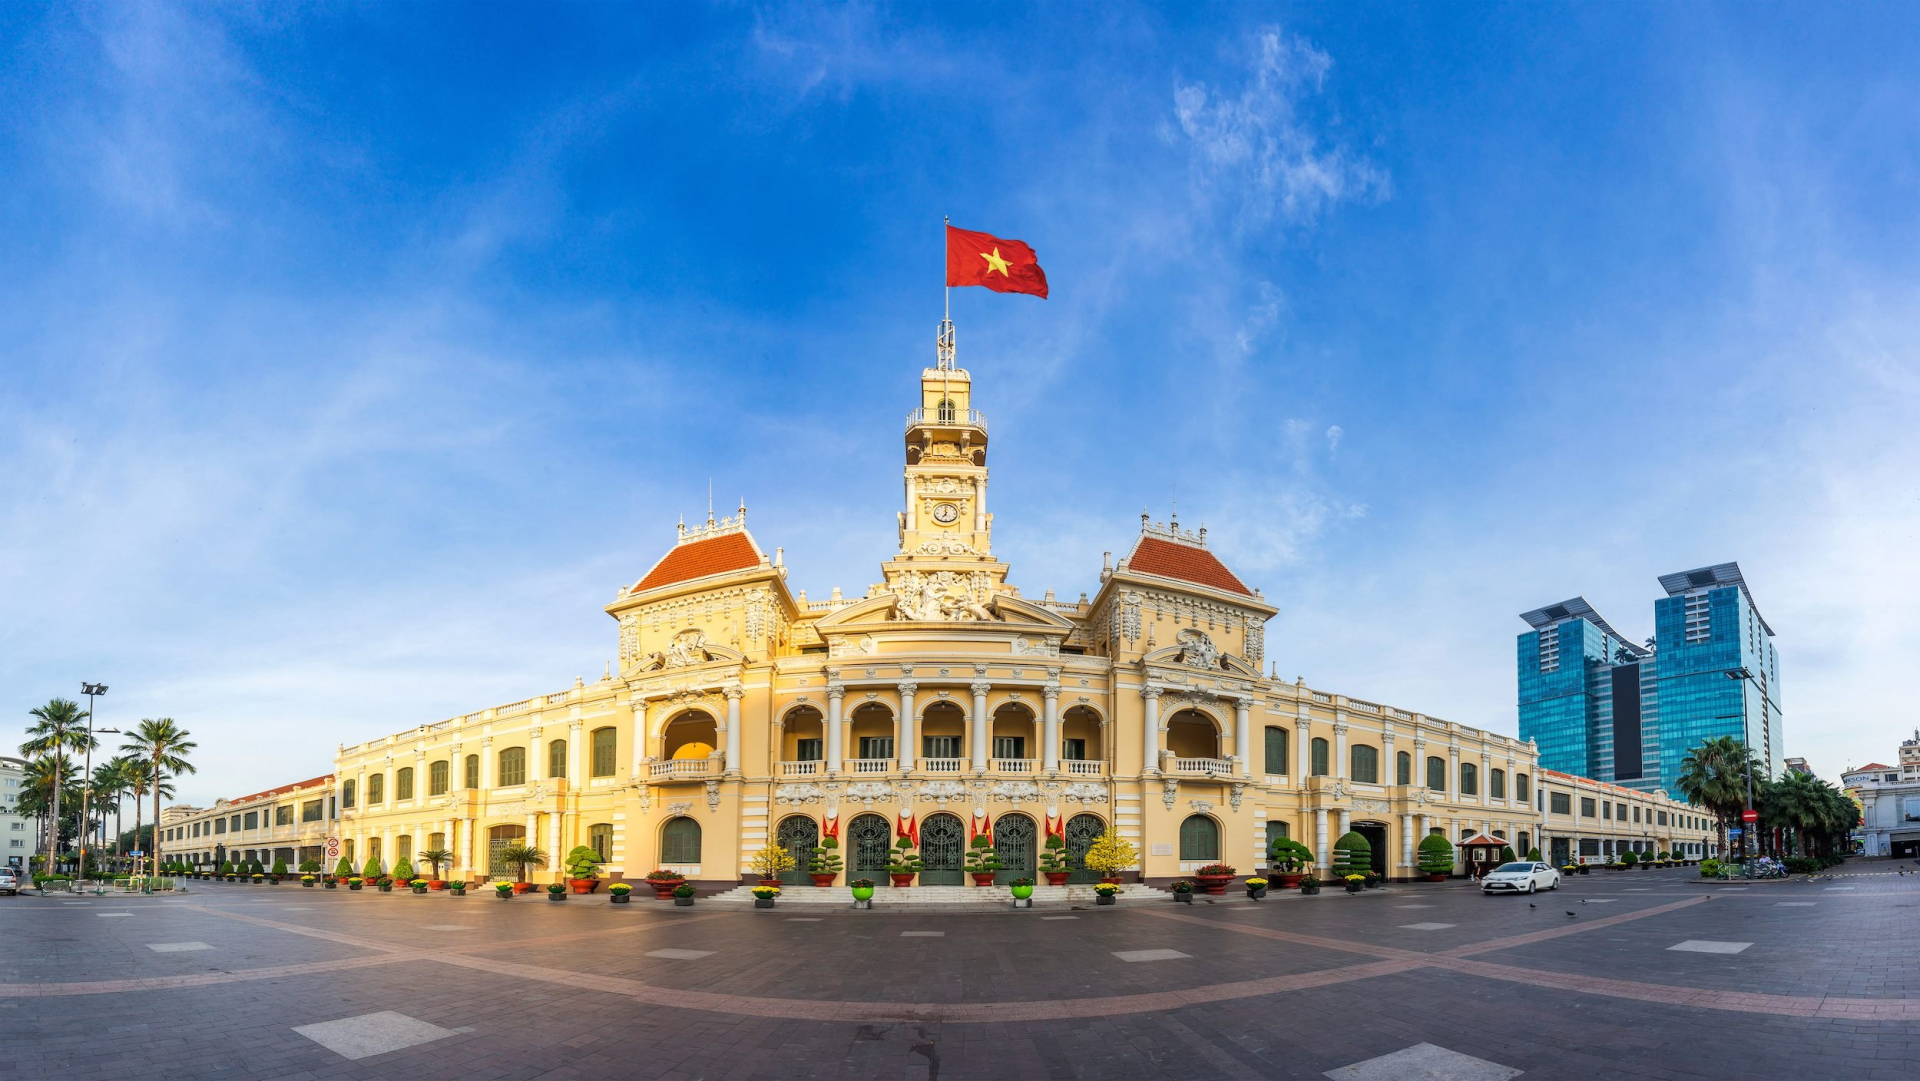 Câu hỏi tưởng dễ mà lại khó “Tỉnh nào có tên dài nhất Việt Nam?”, 90% người trả lời sai - ảnh 6